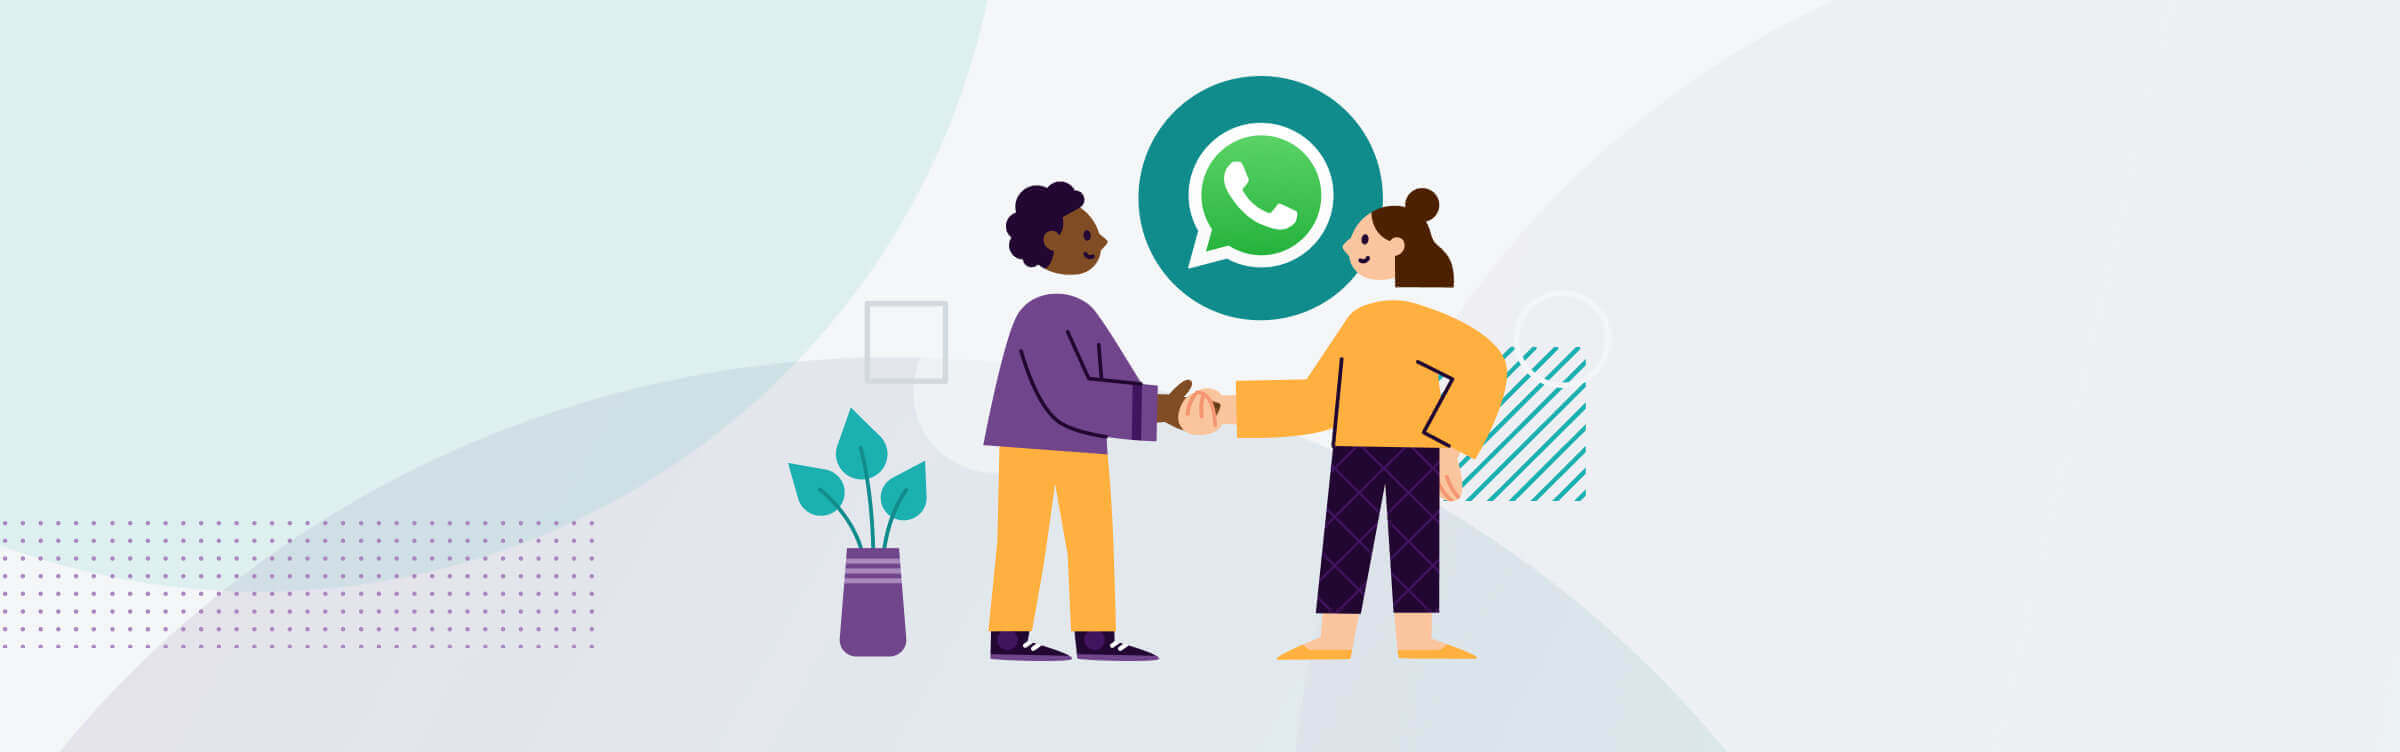 Kundenbeziehungen mit WhatsApp festigen